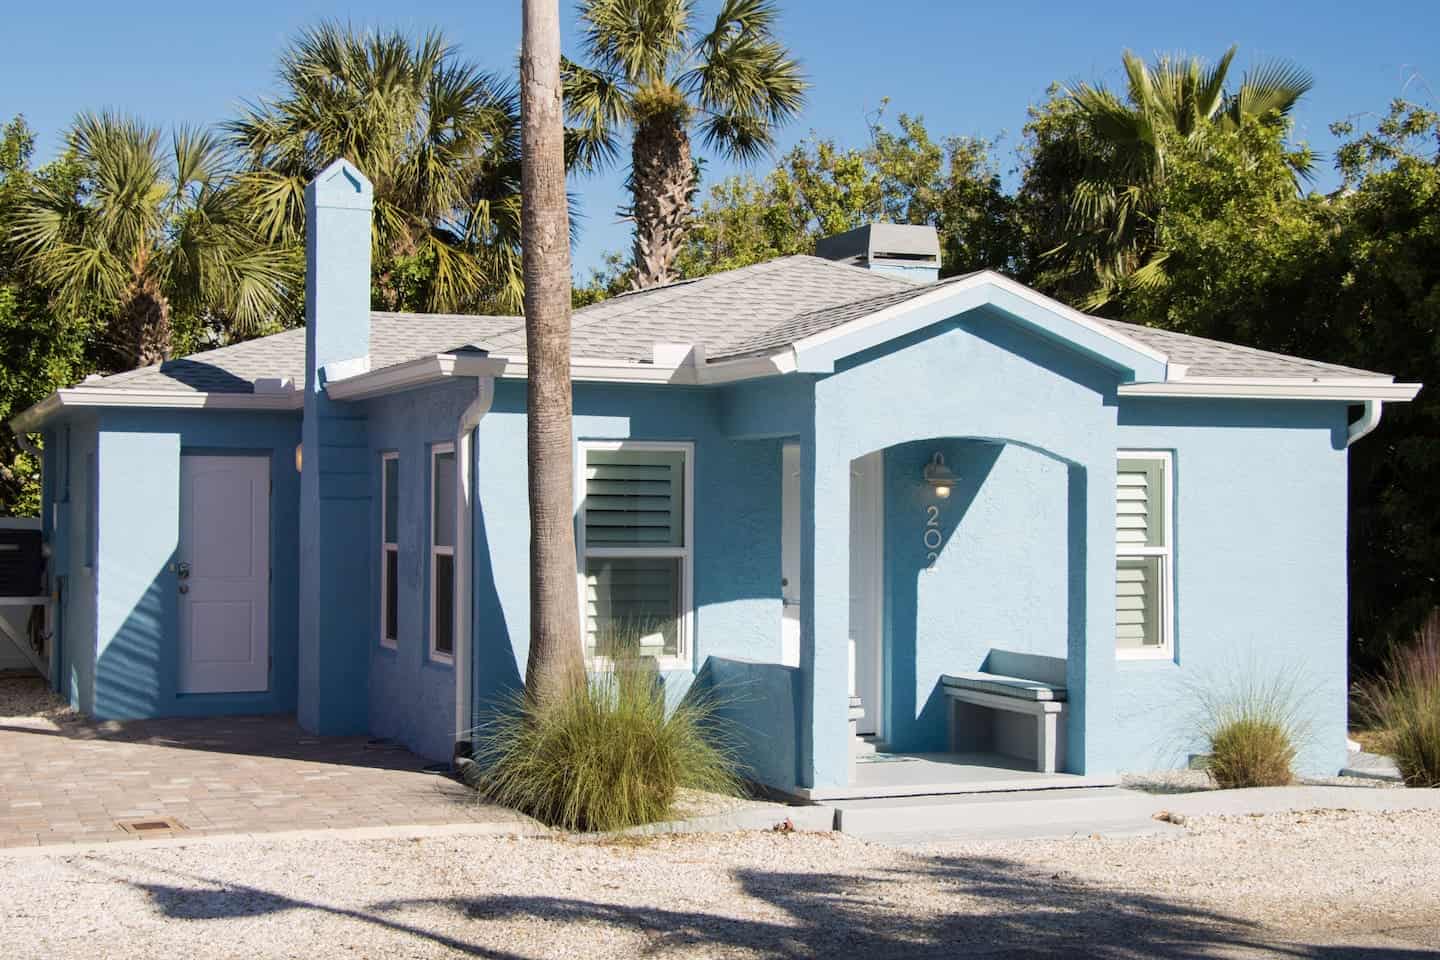 Image of Airbnb rental in St. Petersburg, Florida